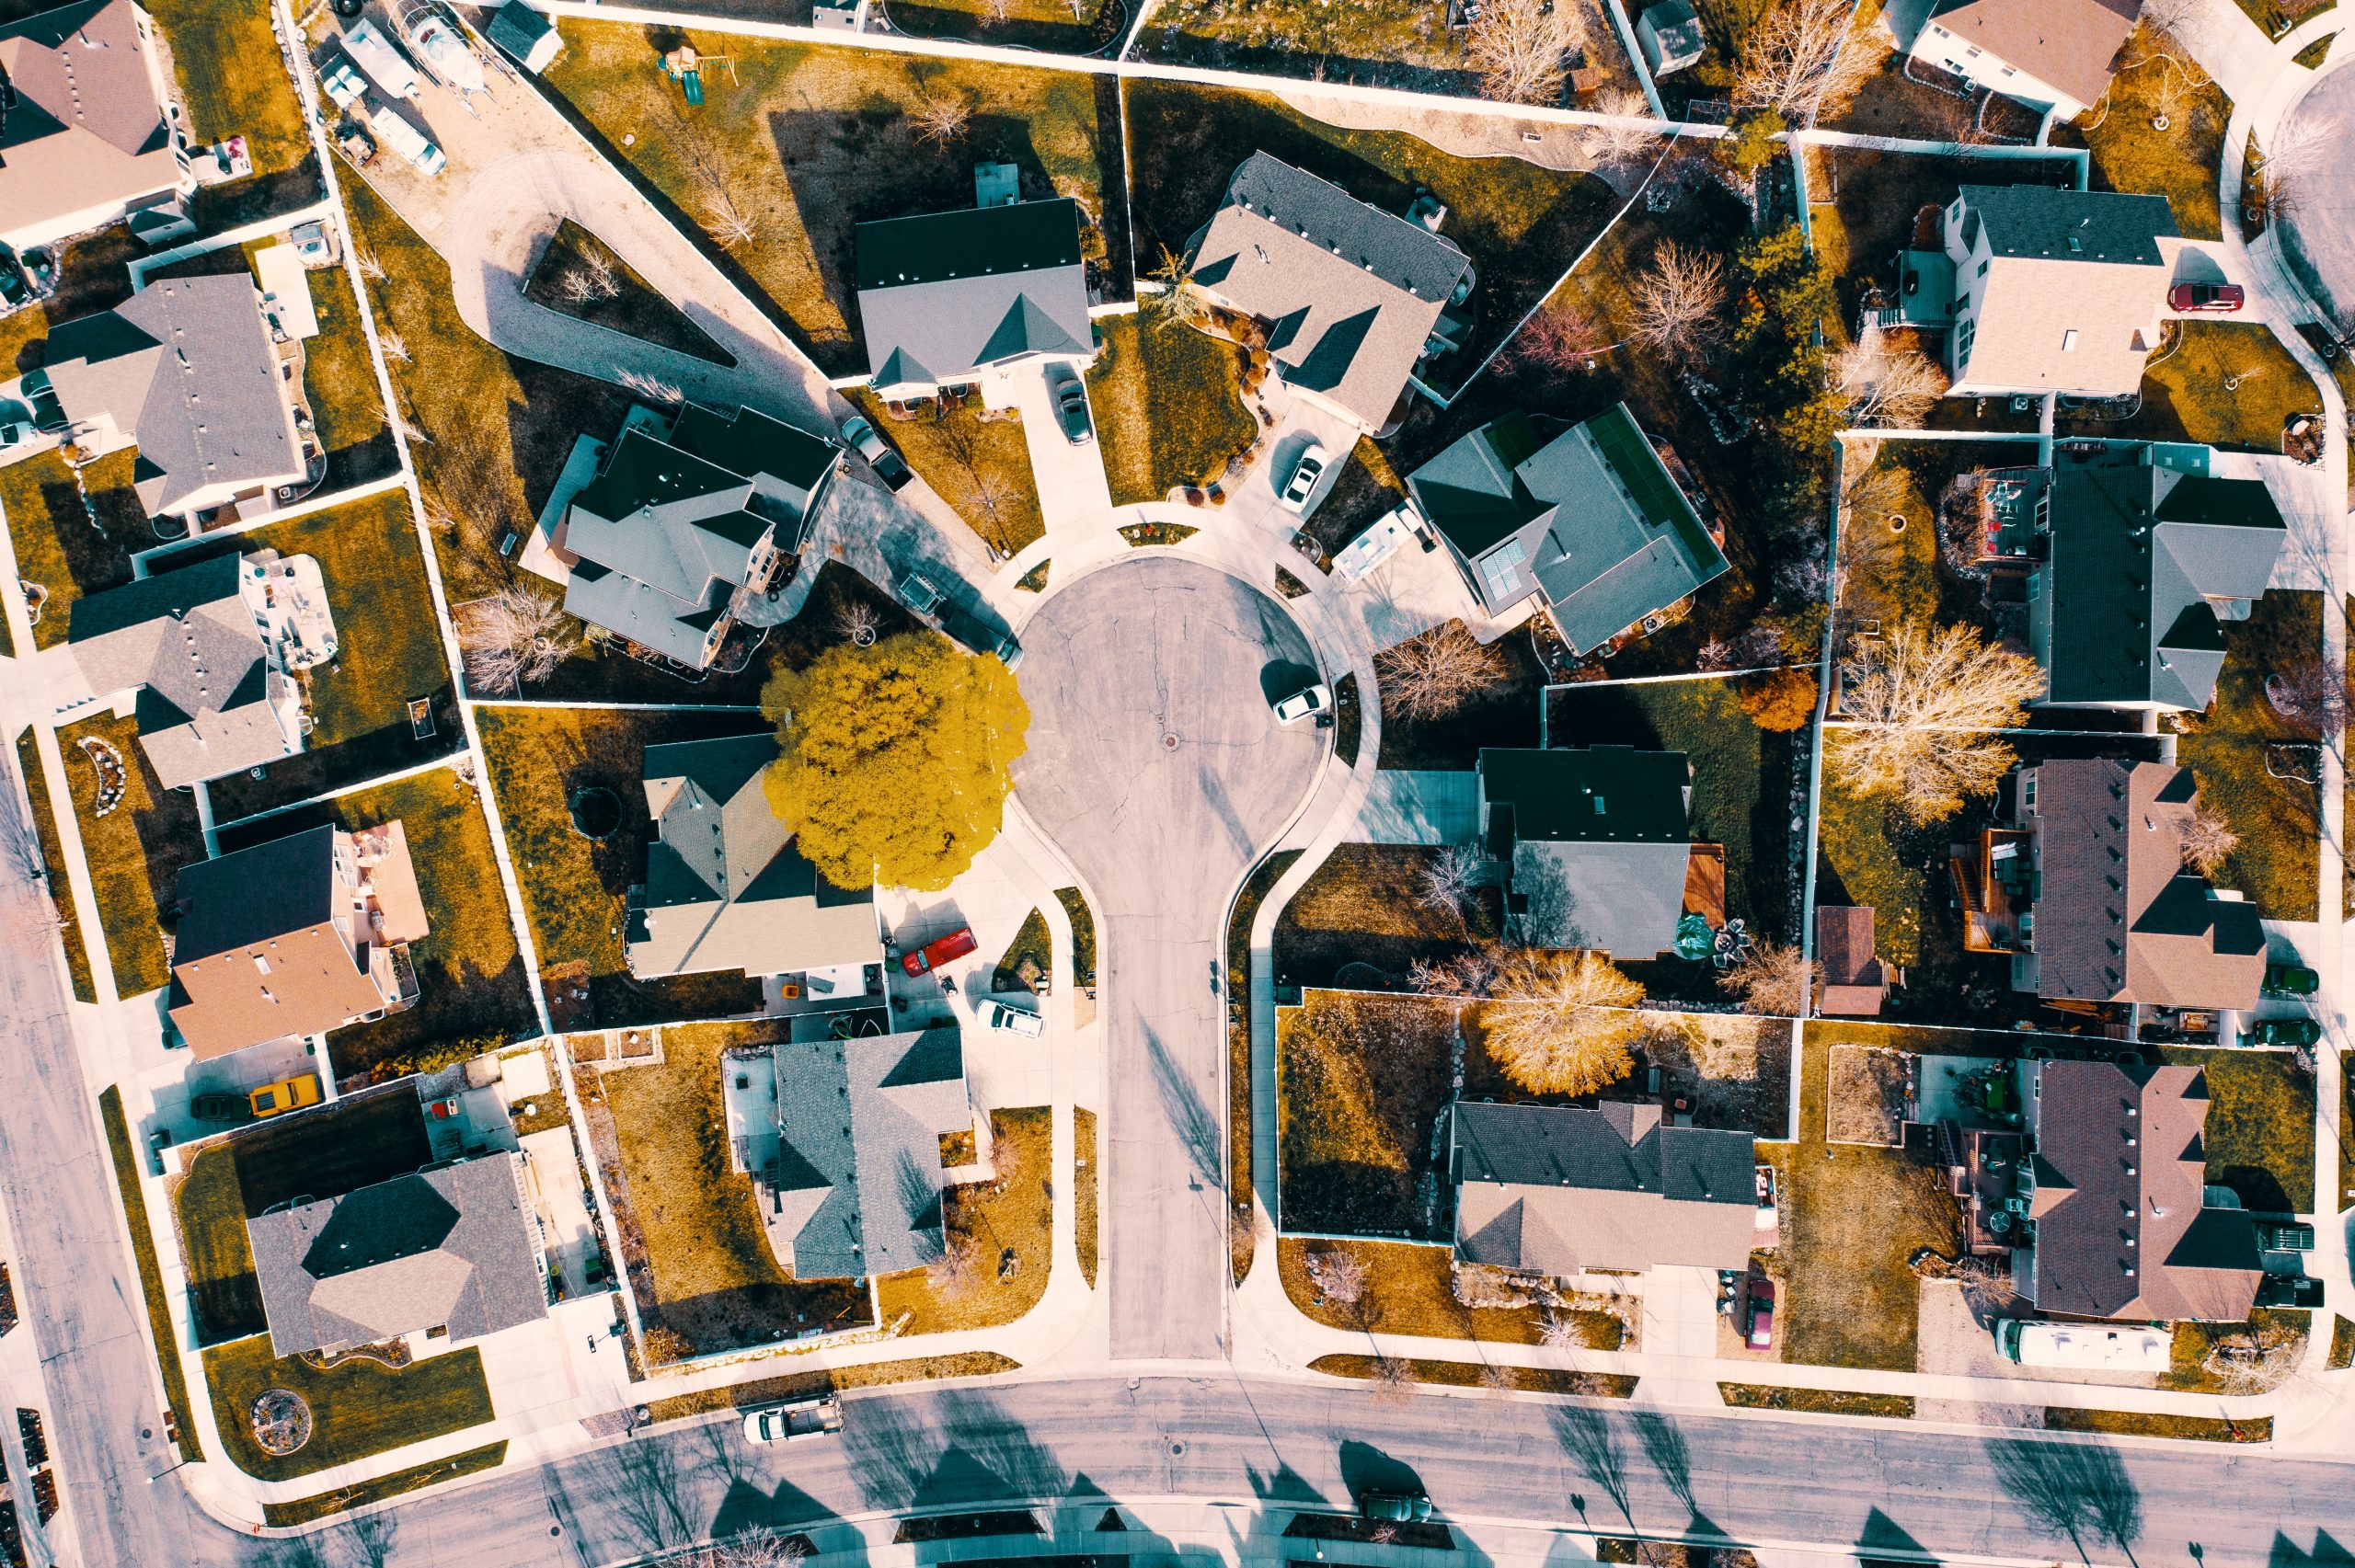 An aerial view of a residential neighbourhood